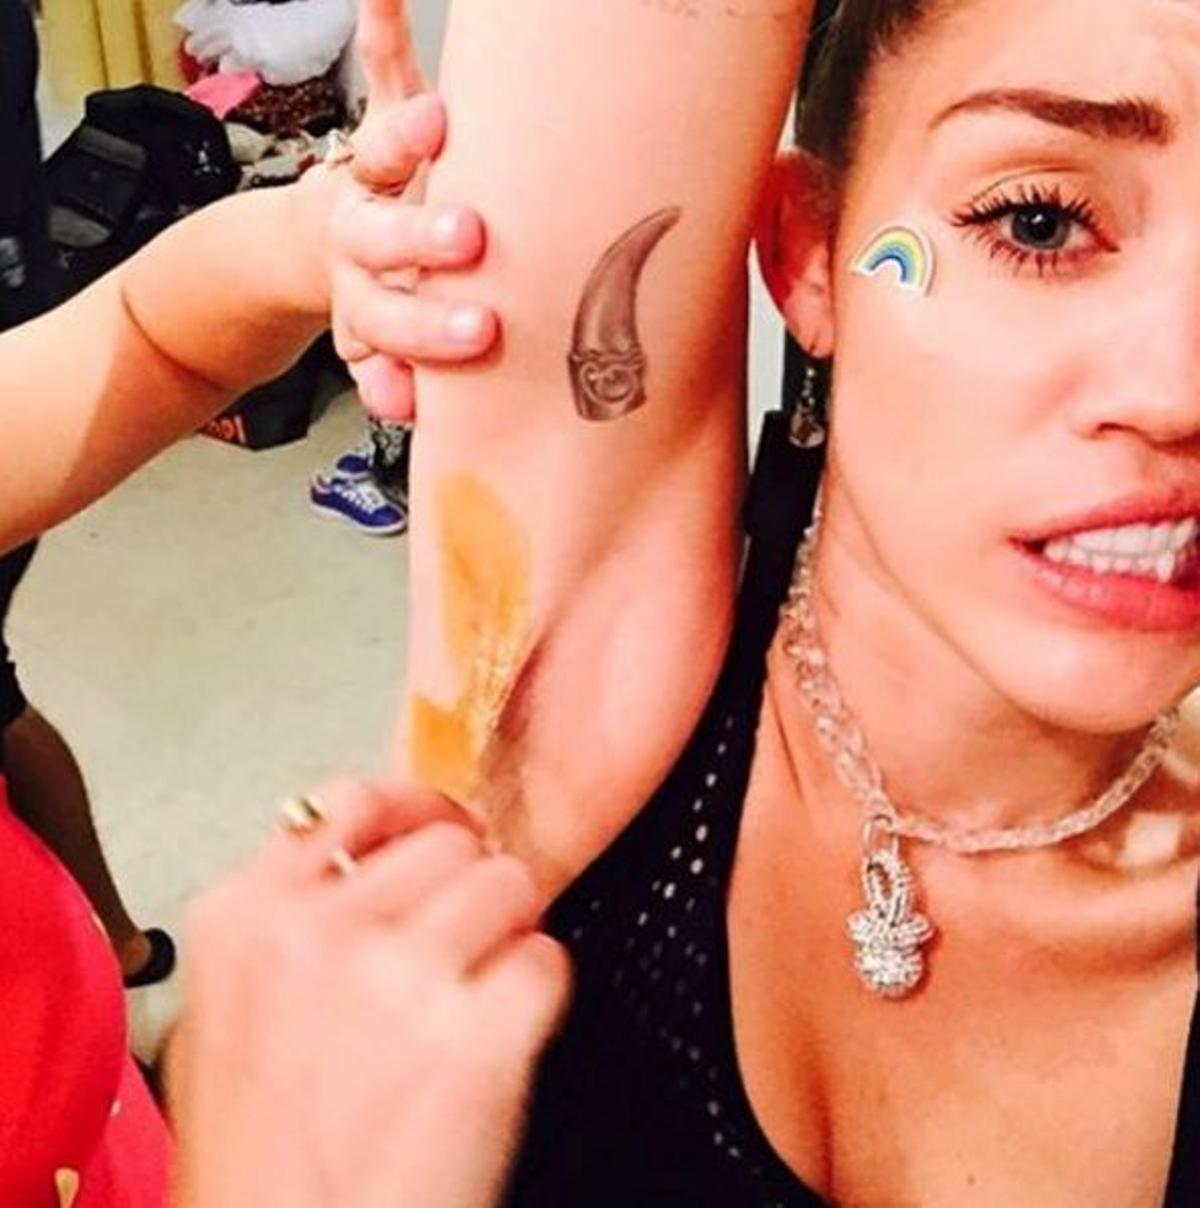 ¿Cera? No, un colmillo. El tatuaje de Miley Cyrus